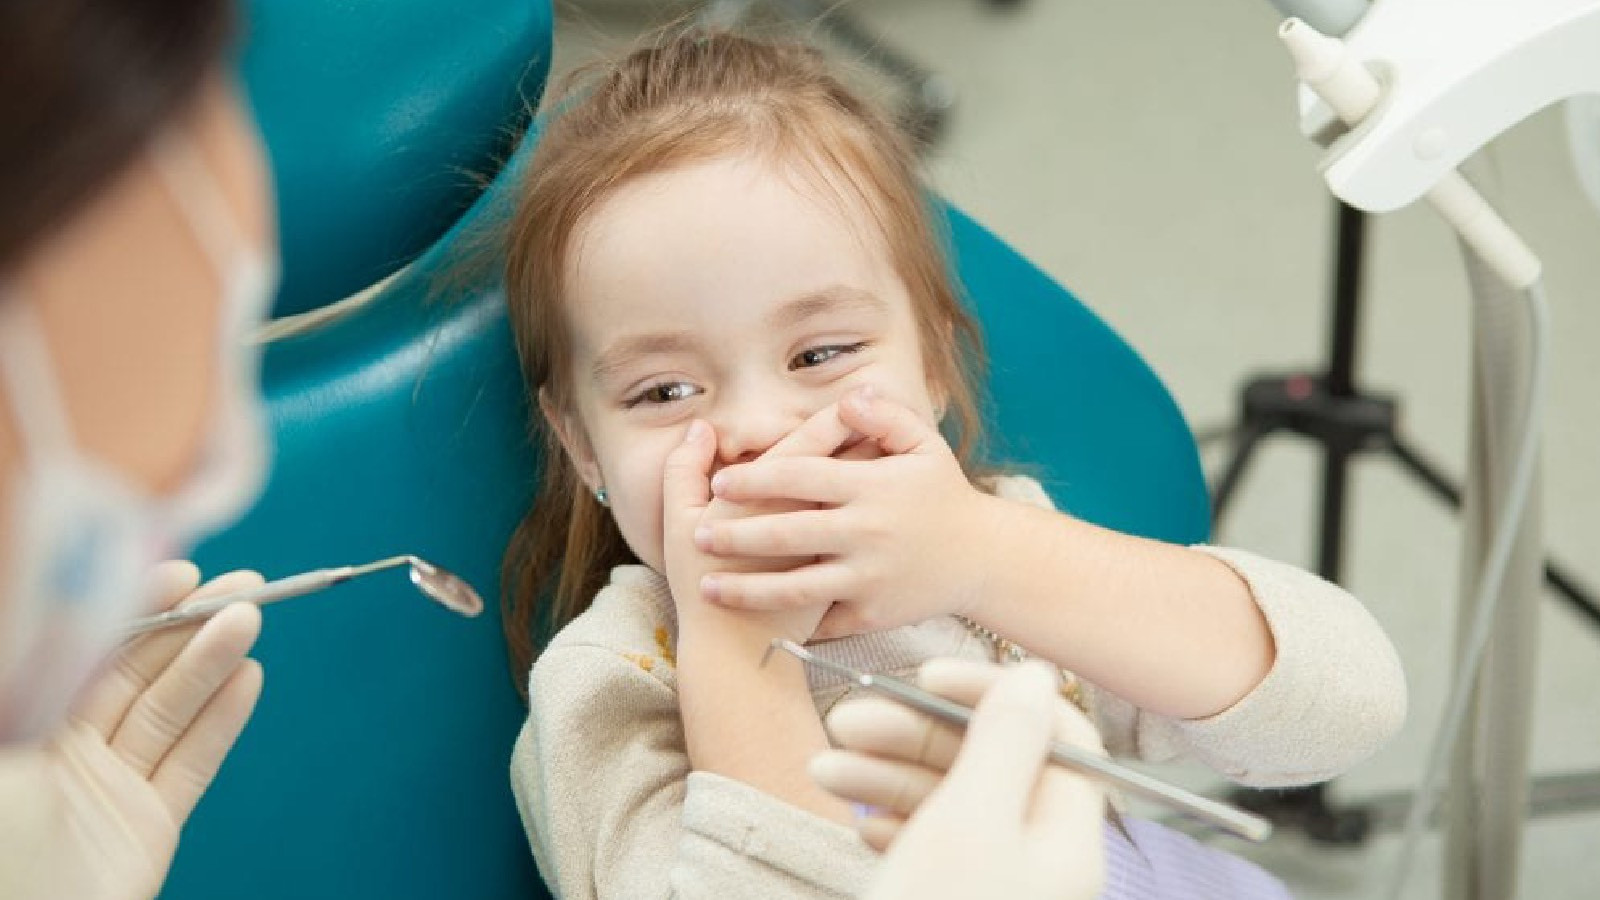 Medical Park Ağız ve Diş Sağlığı Hekimi Özlem Karabıyık, ailelerin dikkat etmesi gereken durumlar hakkında önemli açıklamalarda bulundu.